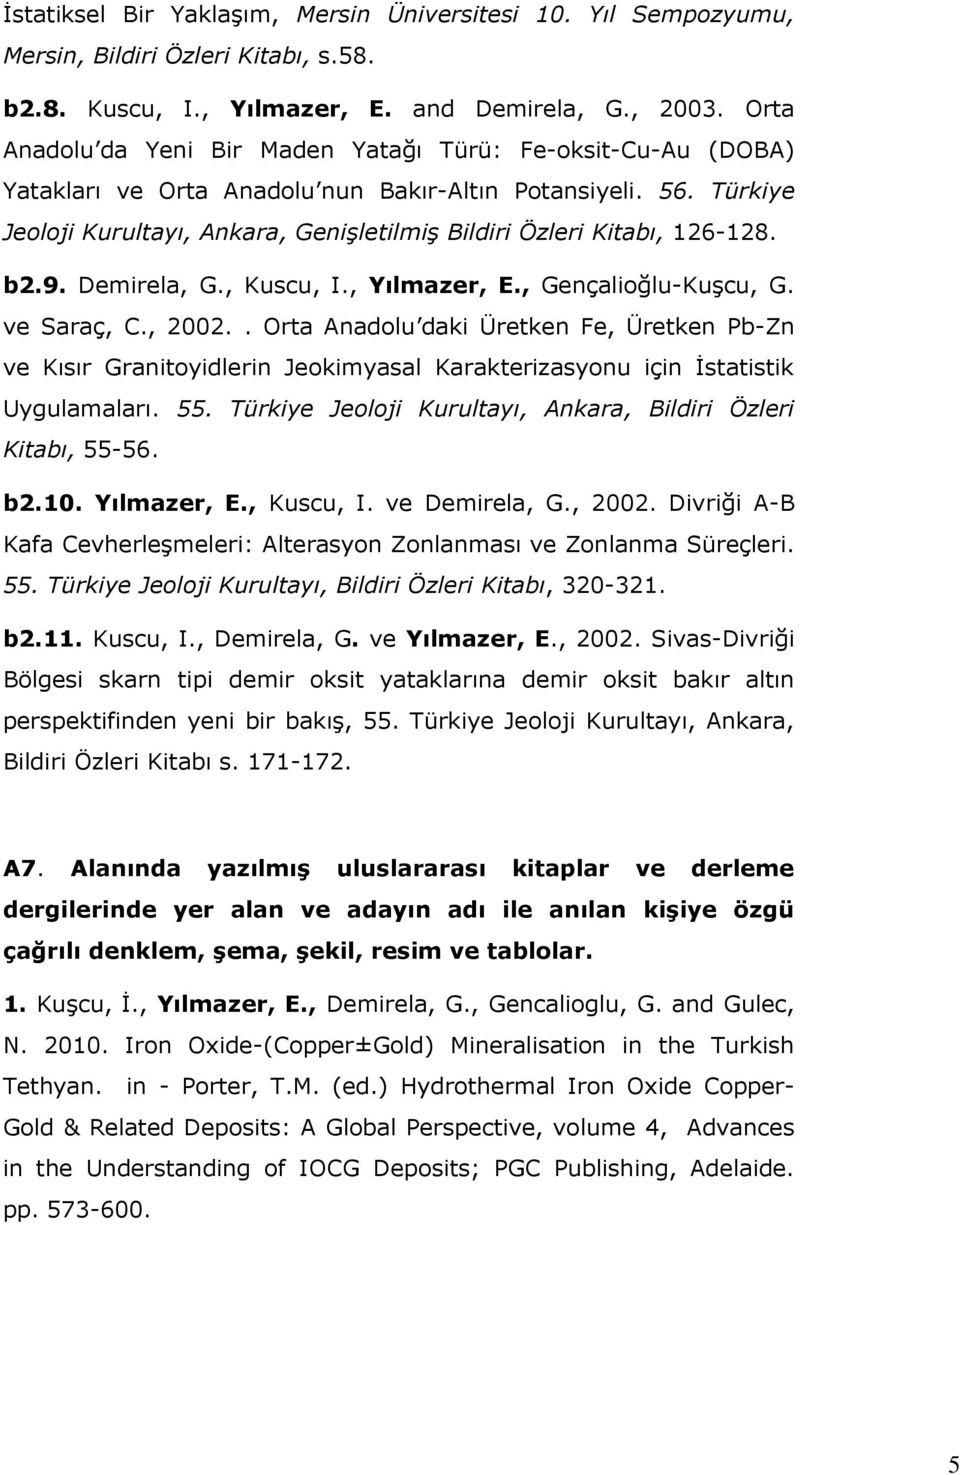 Türkiye Jeoloji Kurultayı, Ankara, Genişletilmiş Bildiri Özleri Kitabı, 126-128. b2.9. Demirela, G., Kuscu, I., Yılmazer, E., Gençalioğlu-Kuşcu, G. ve Saraç, C., 2002.